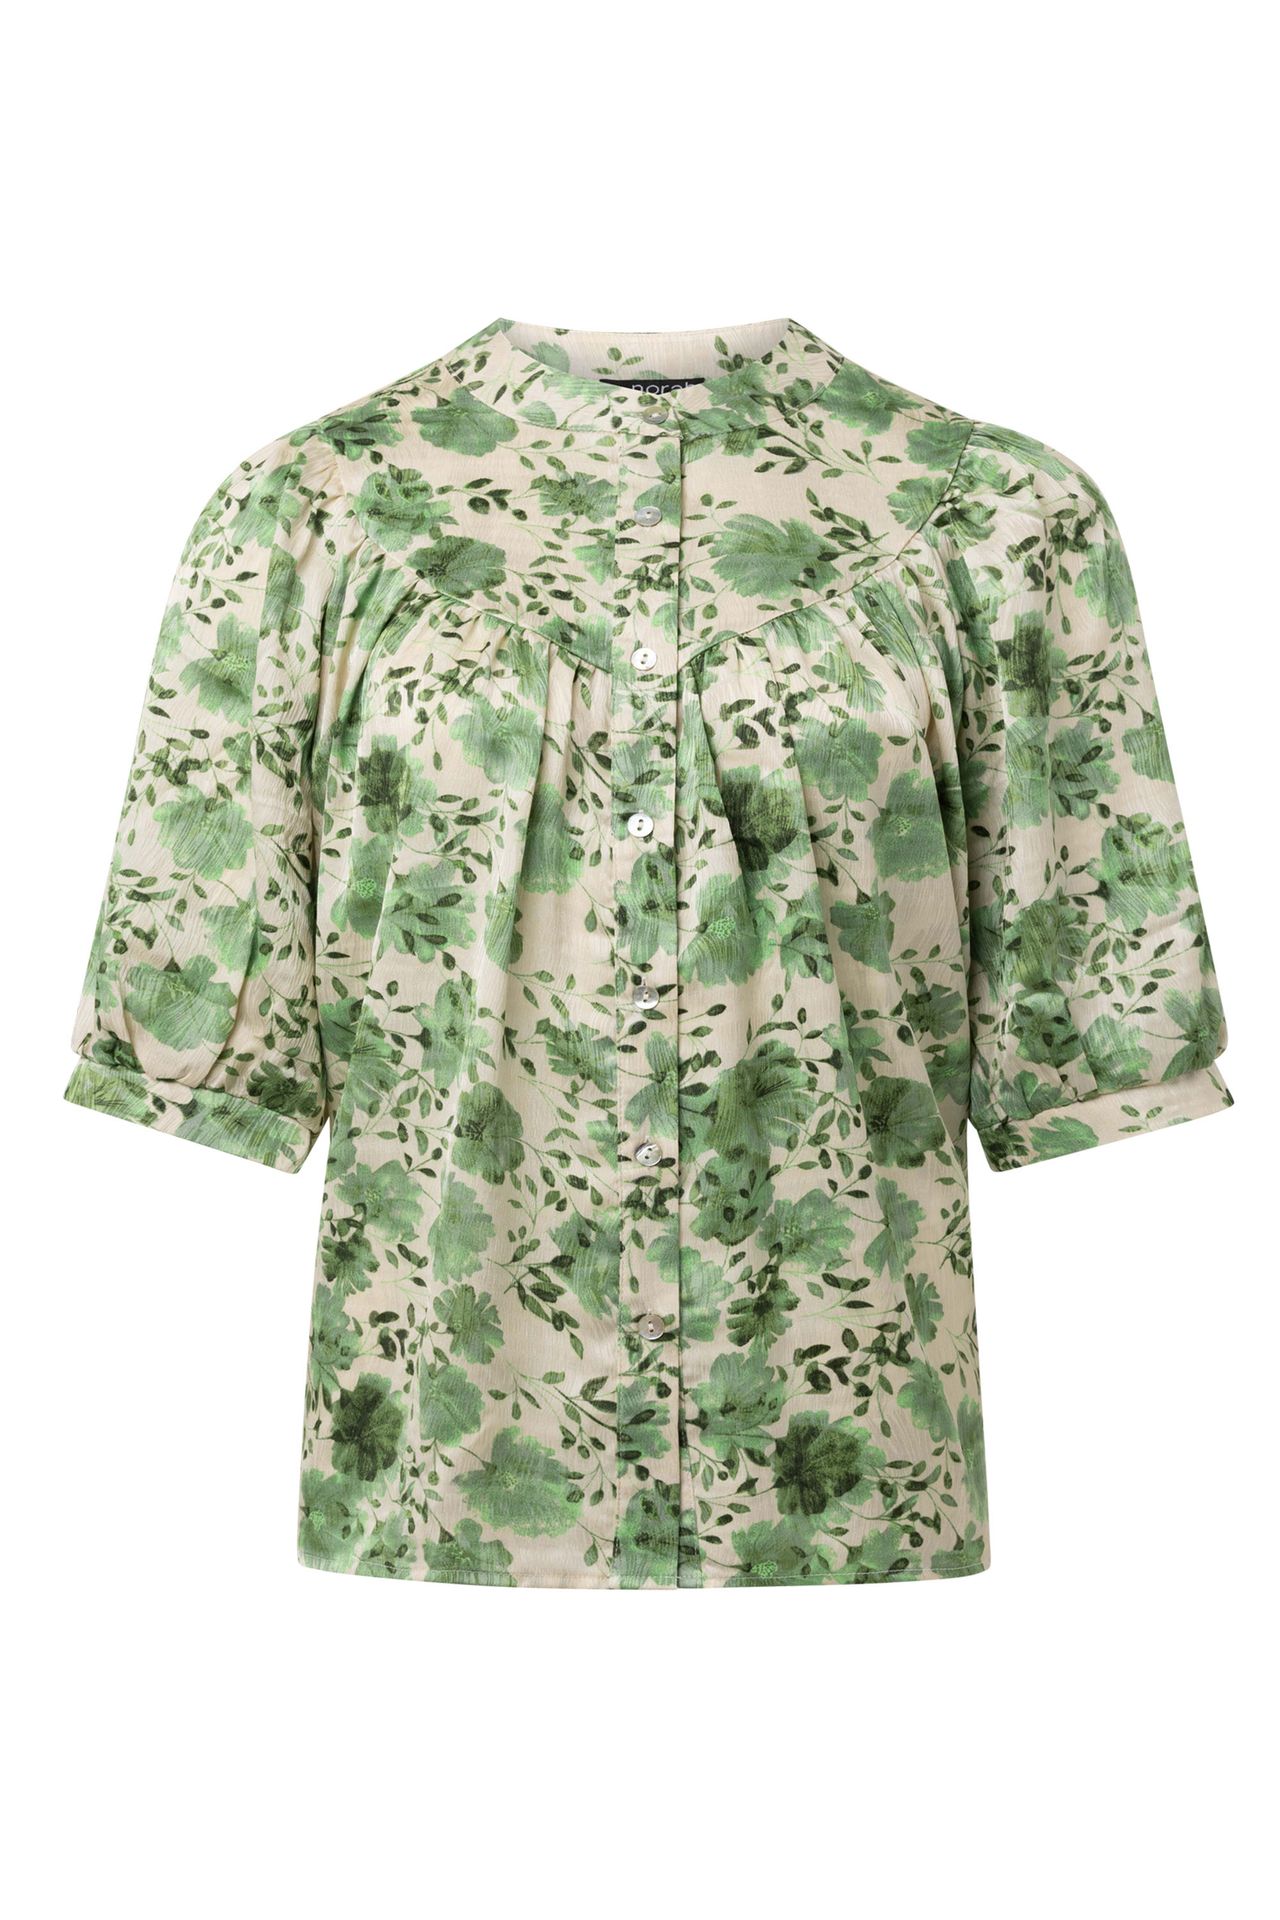 Norah Groene blouse green/ecru 214312-541